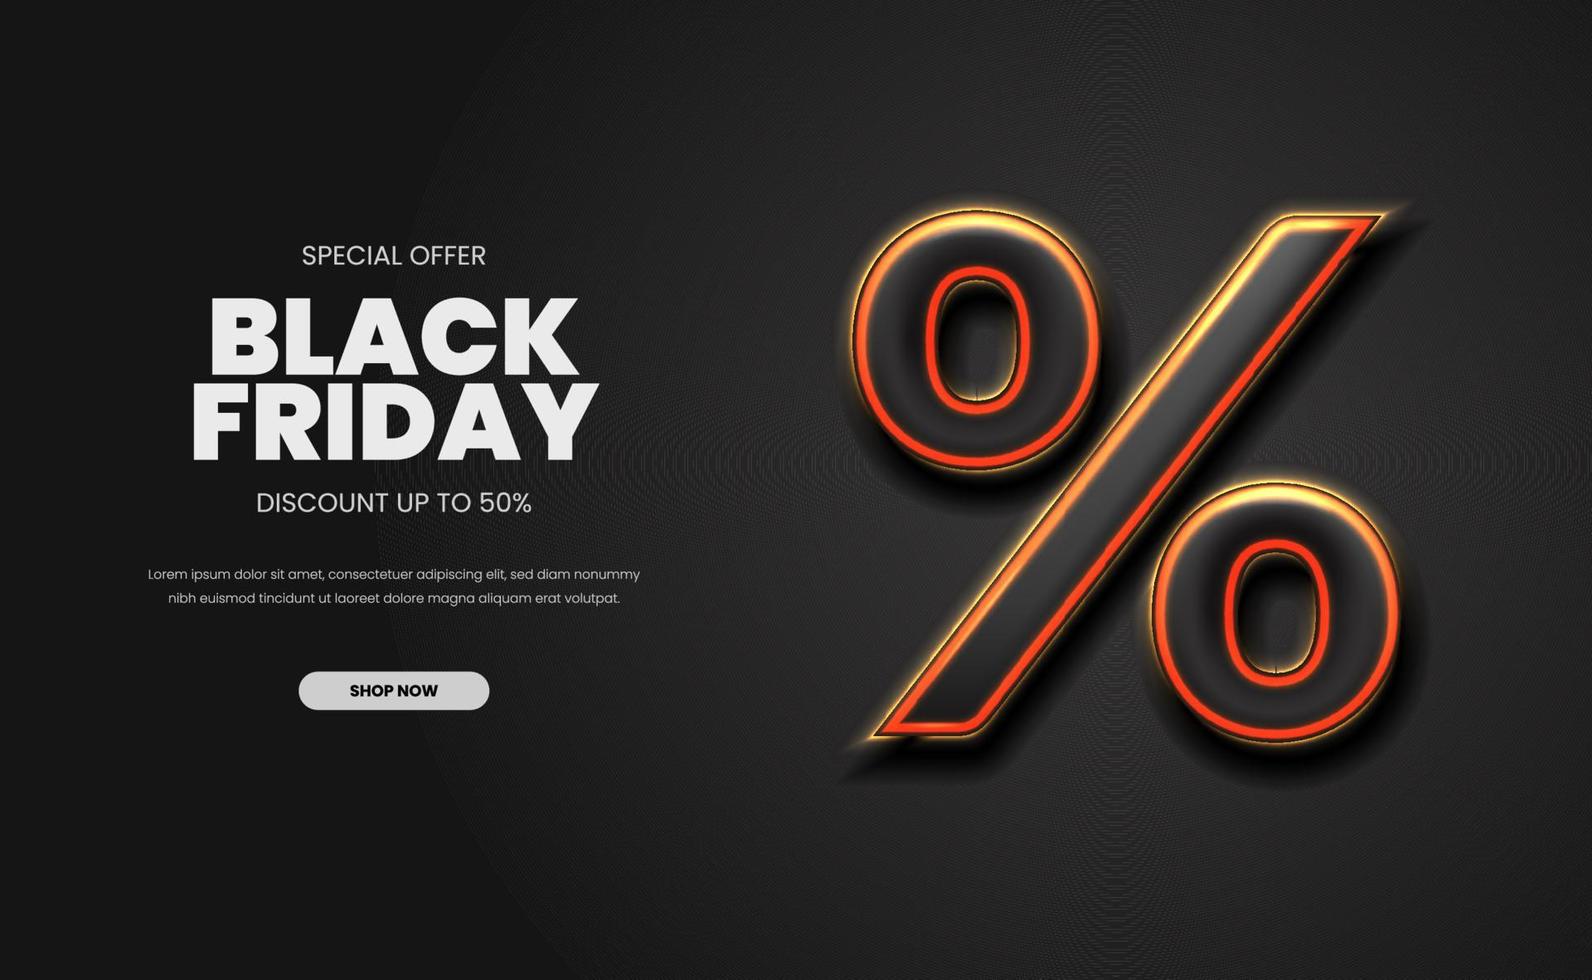 3d símbolo por cento para venda oferece promoção de desconto no dia de compras de sexta-feira negra super mega bis venda com fundo escuro vetor